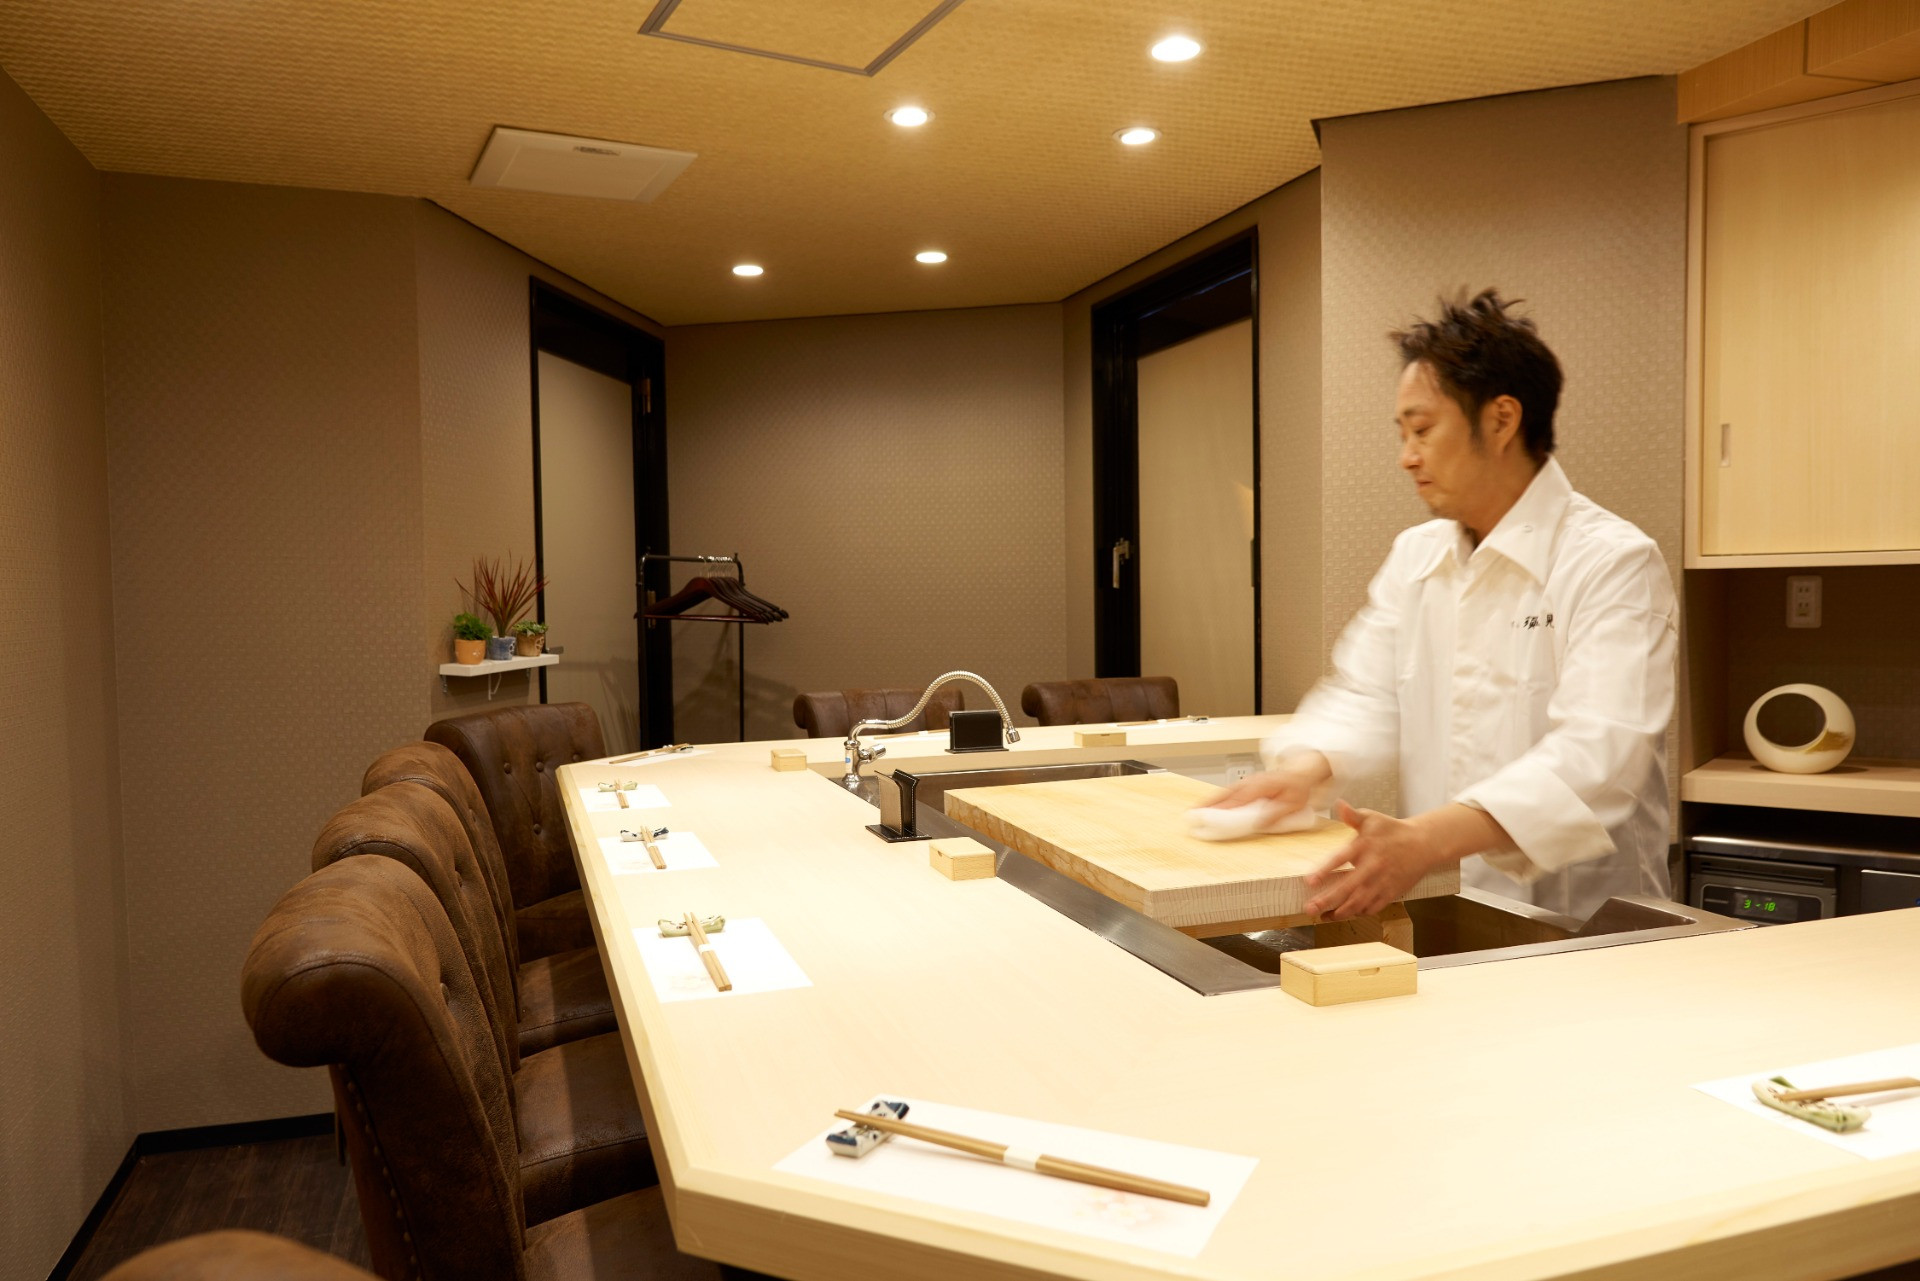 丁寧な仕事を間近で見られる和食店として福島区で評判